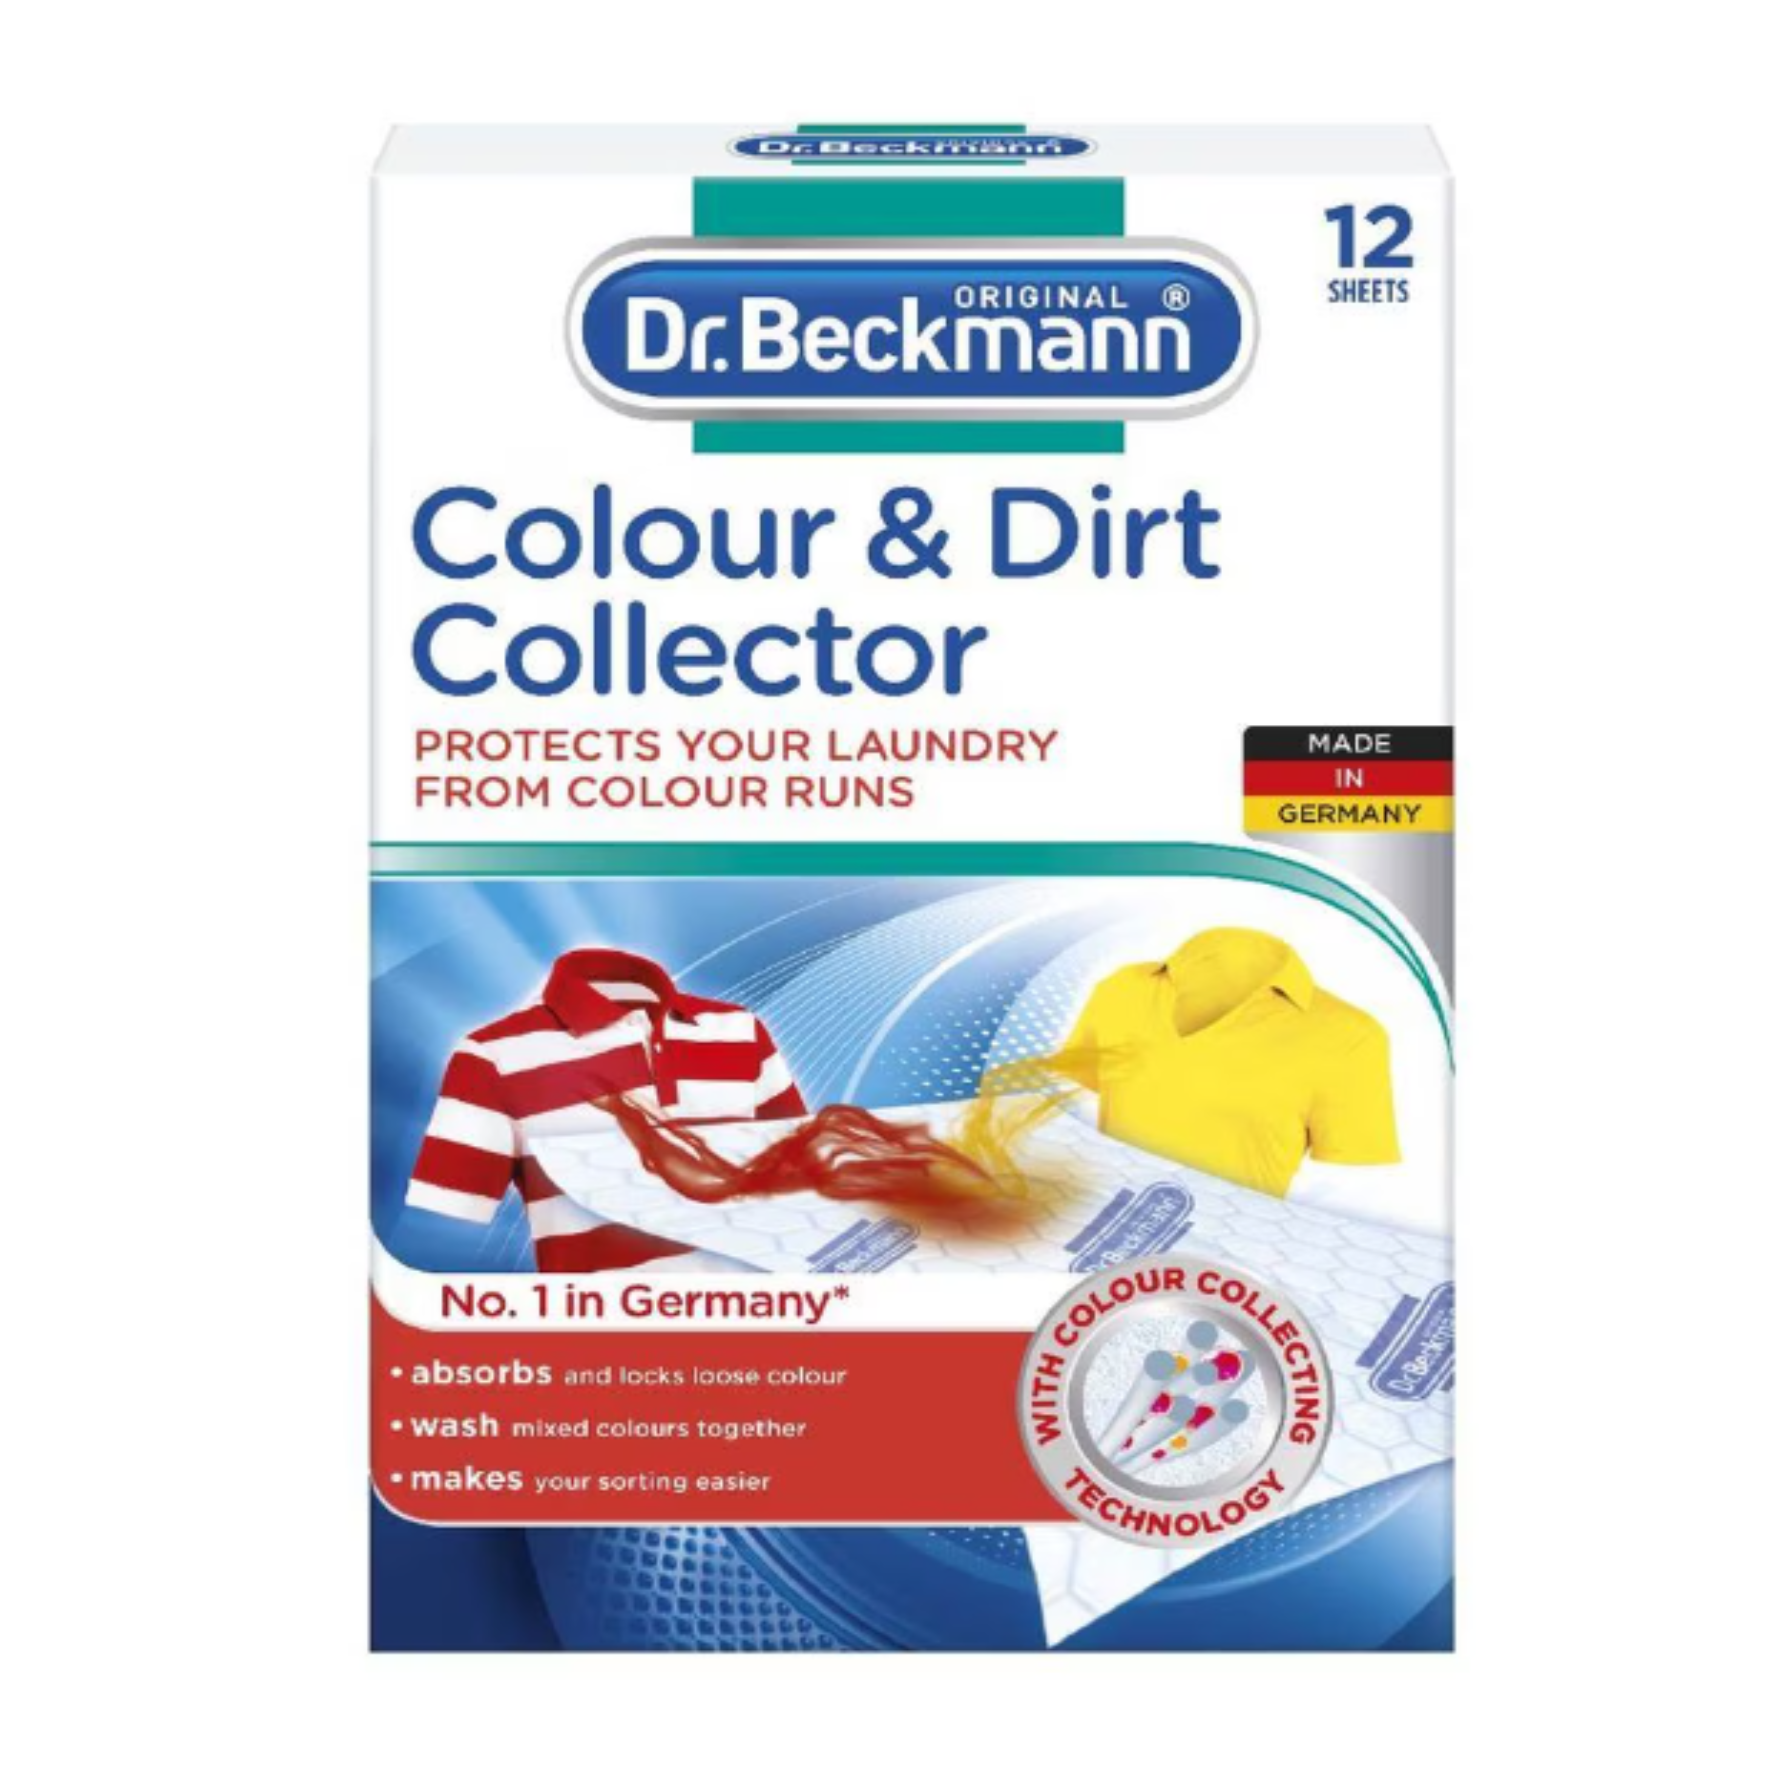 DR. BECKMANN COLOUR & DIRT Collector 12SHEET/PACK